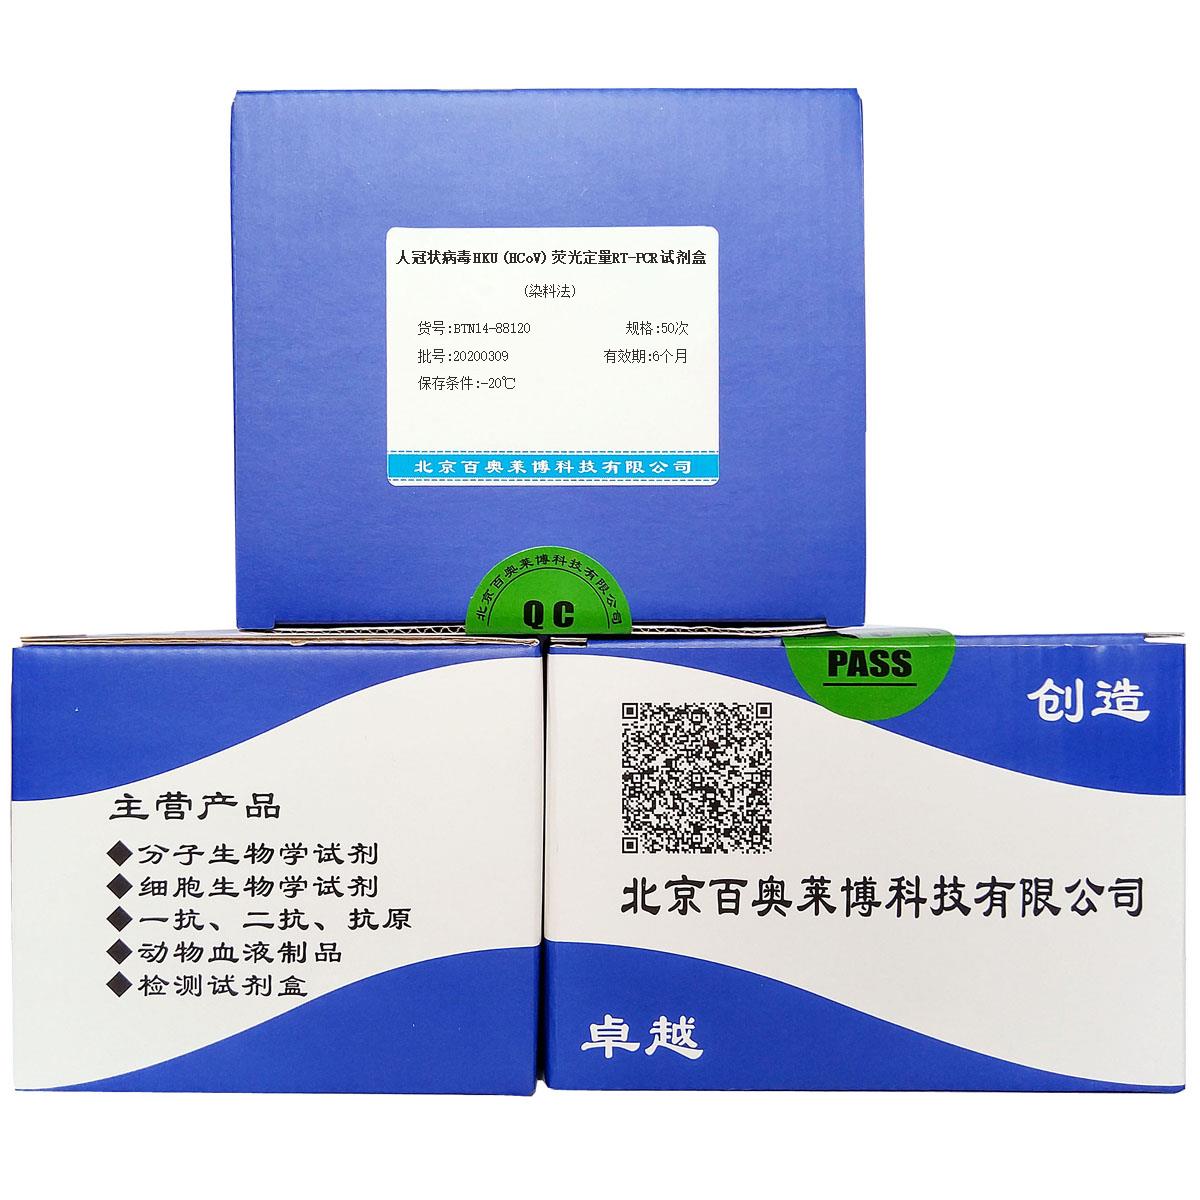 人冠状病毒HKU (HCoV)荧光定量RT-PCR试剂盒(染料法)